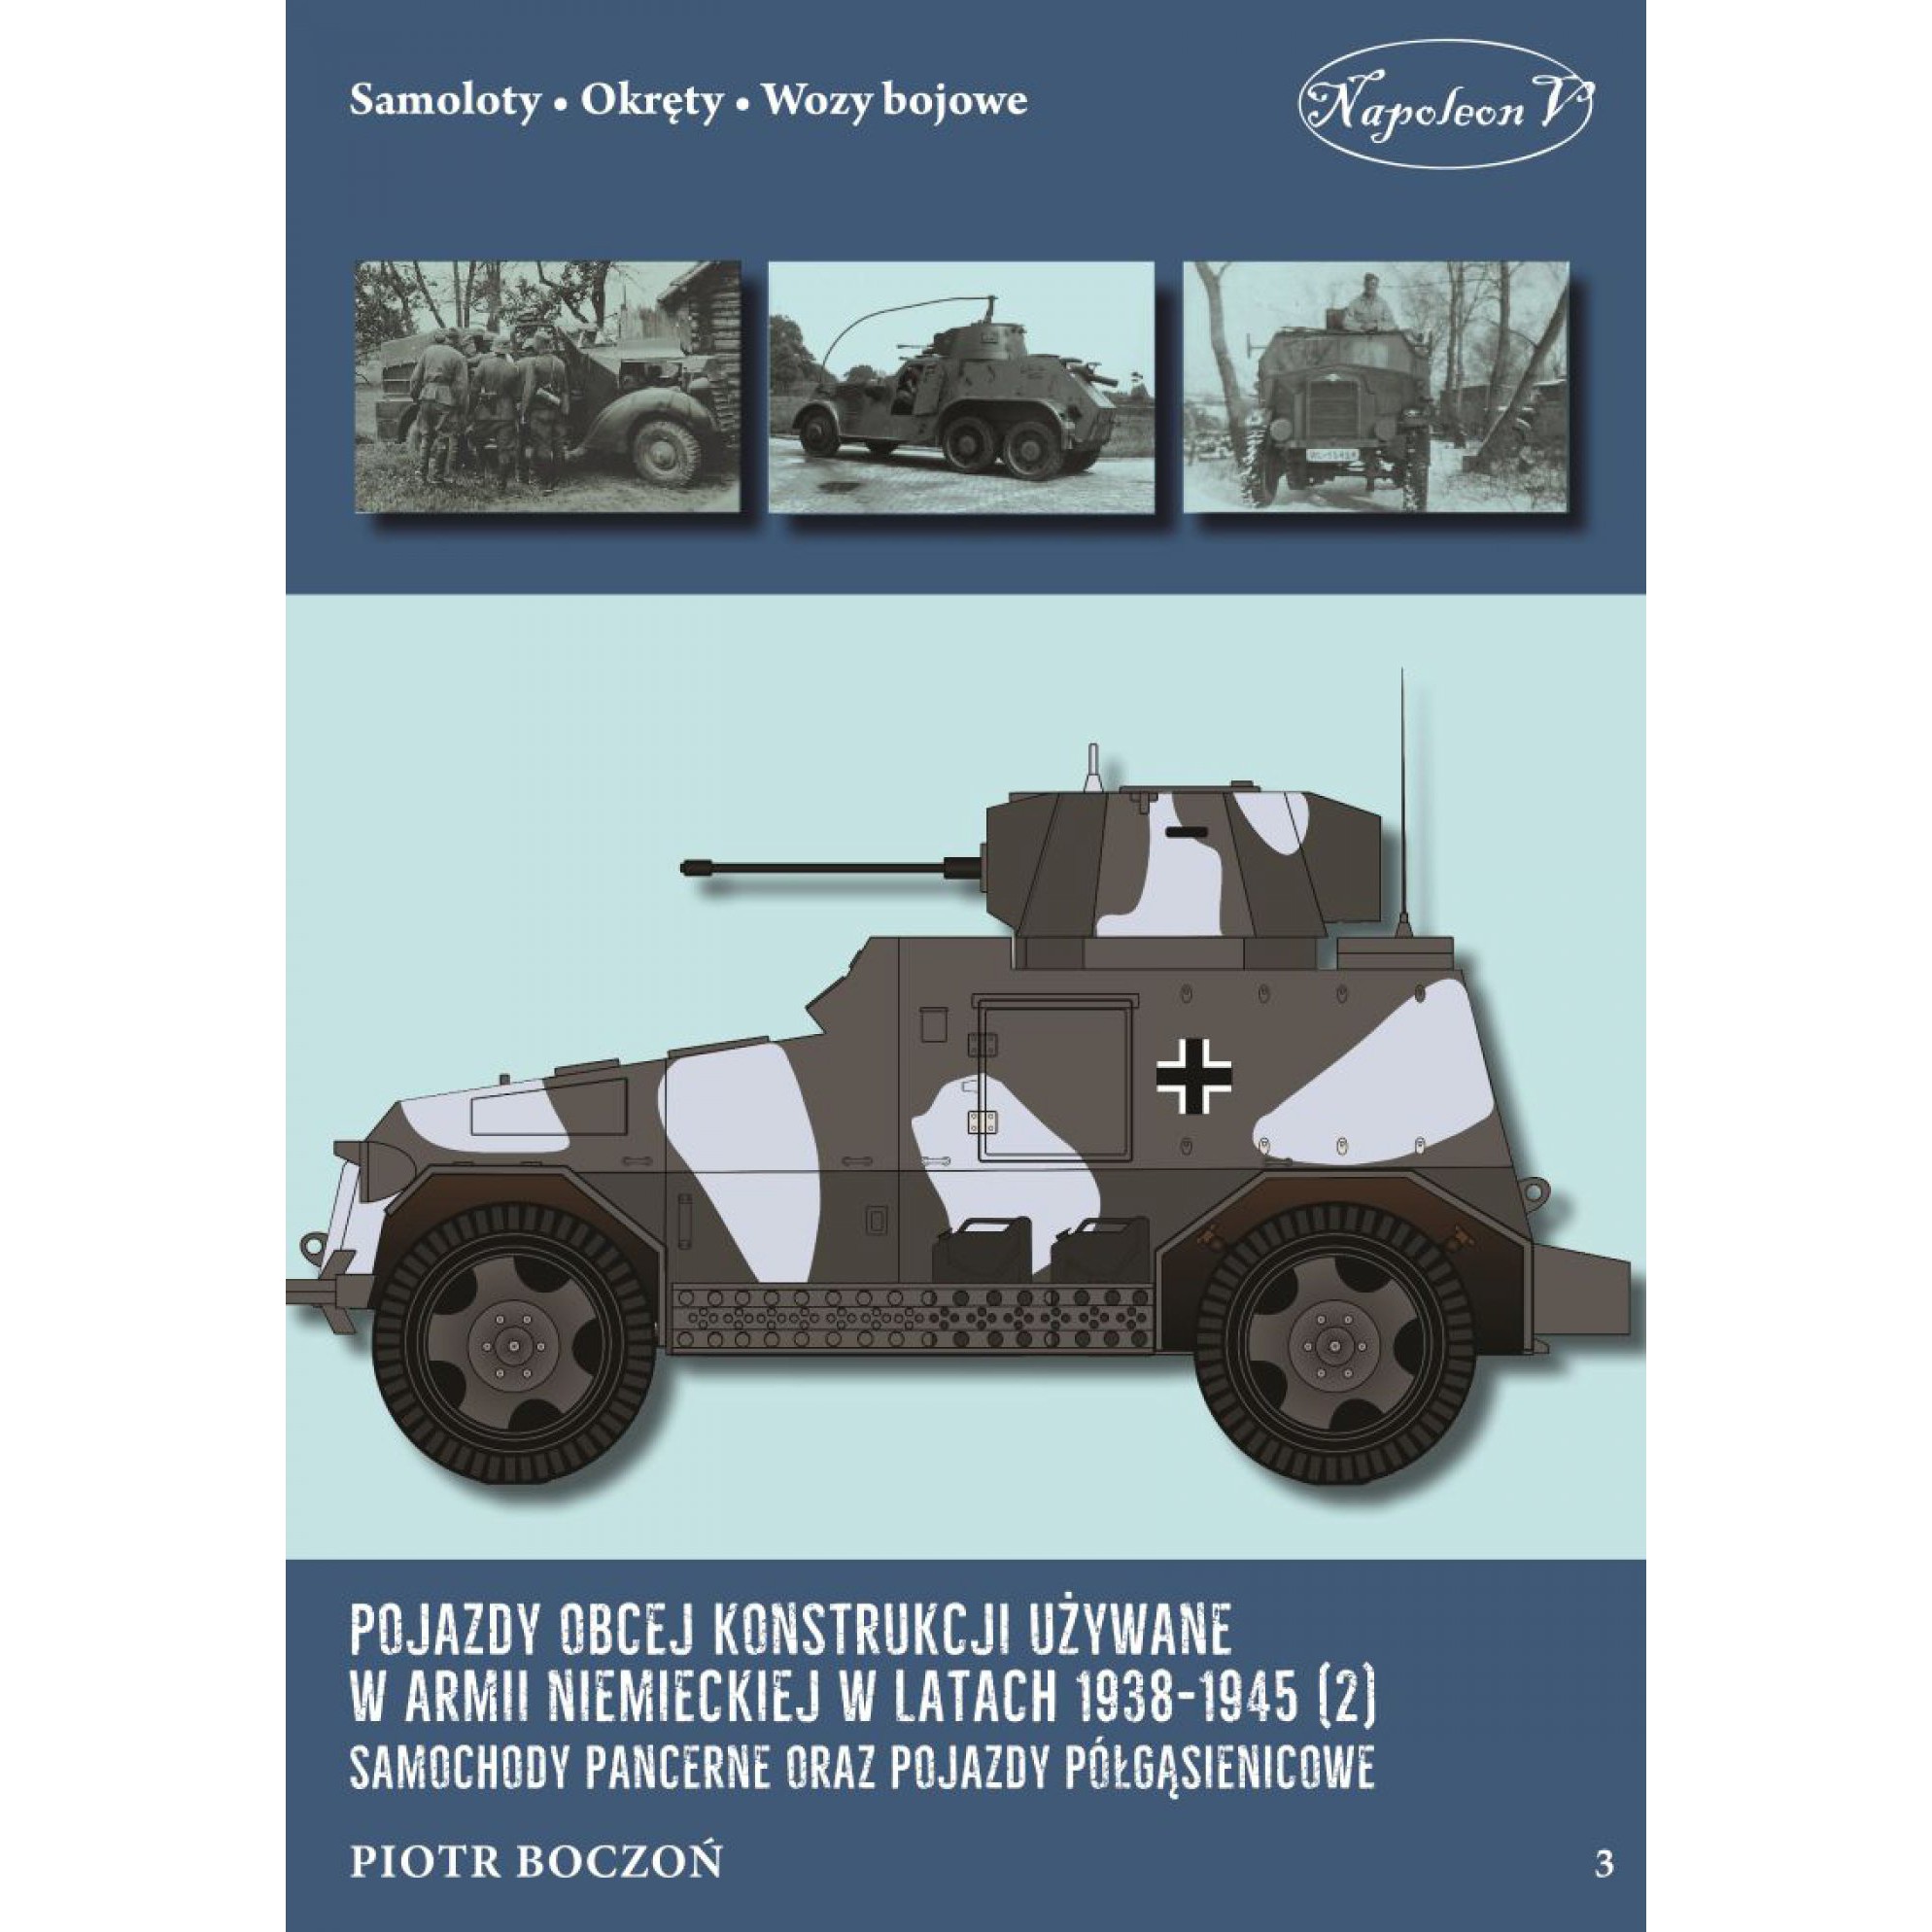 Pojazdy obcej konstrukcji używane w armii niemieckiej w latach 1938-1945 (2) Samochody pancerne oraz pojazdy półgąsienicowe